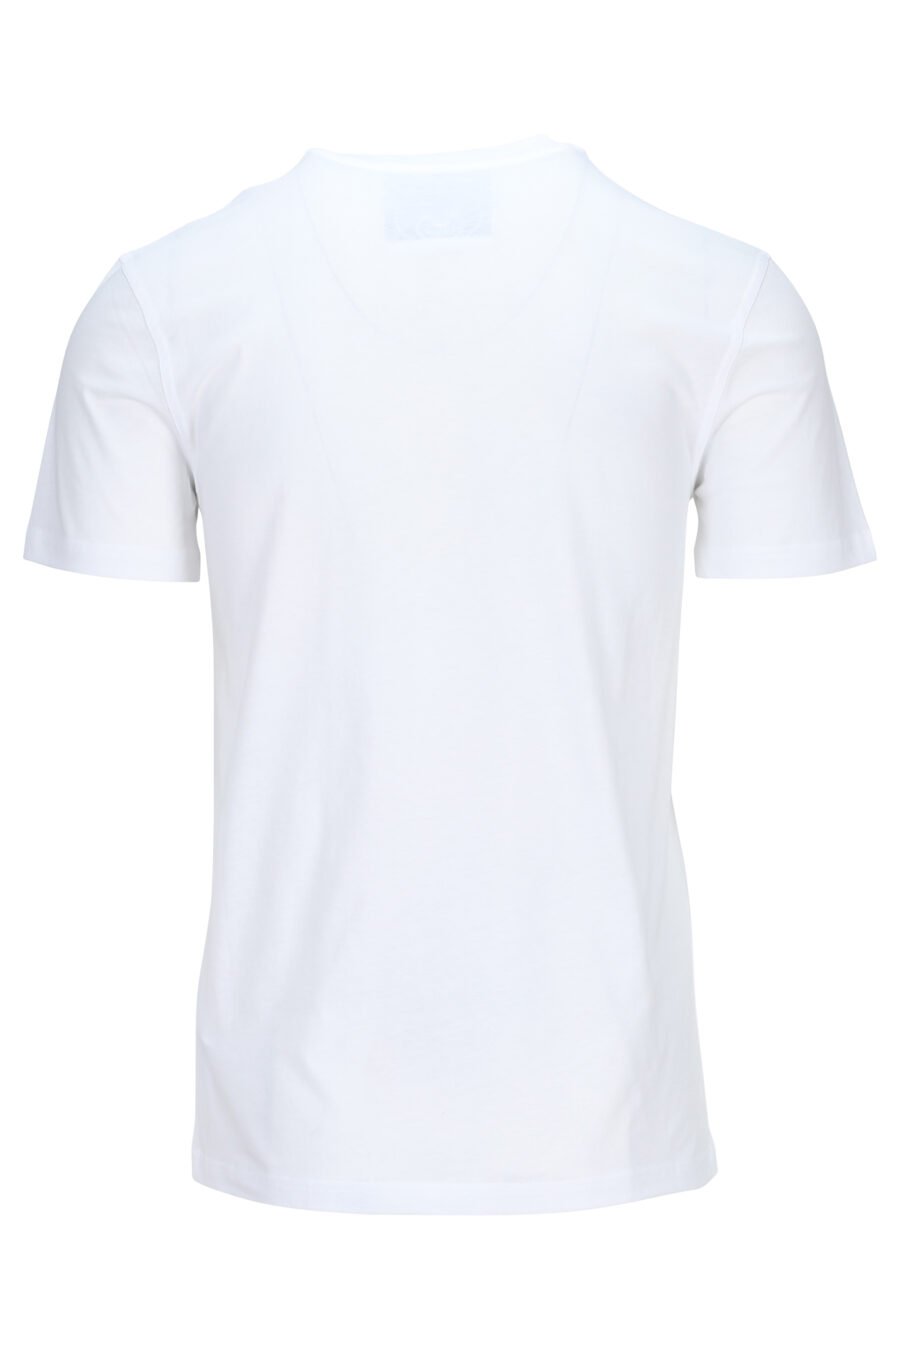 T-shirt blanc en éco-coton avec mini-logo noir "teddy" - 889316853131 1